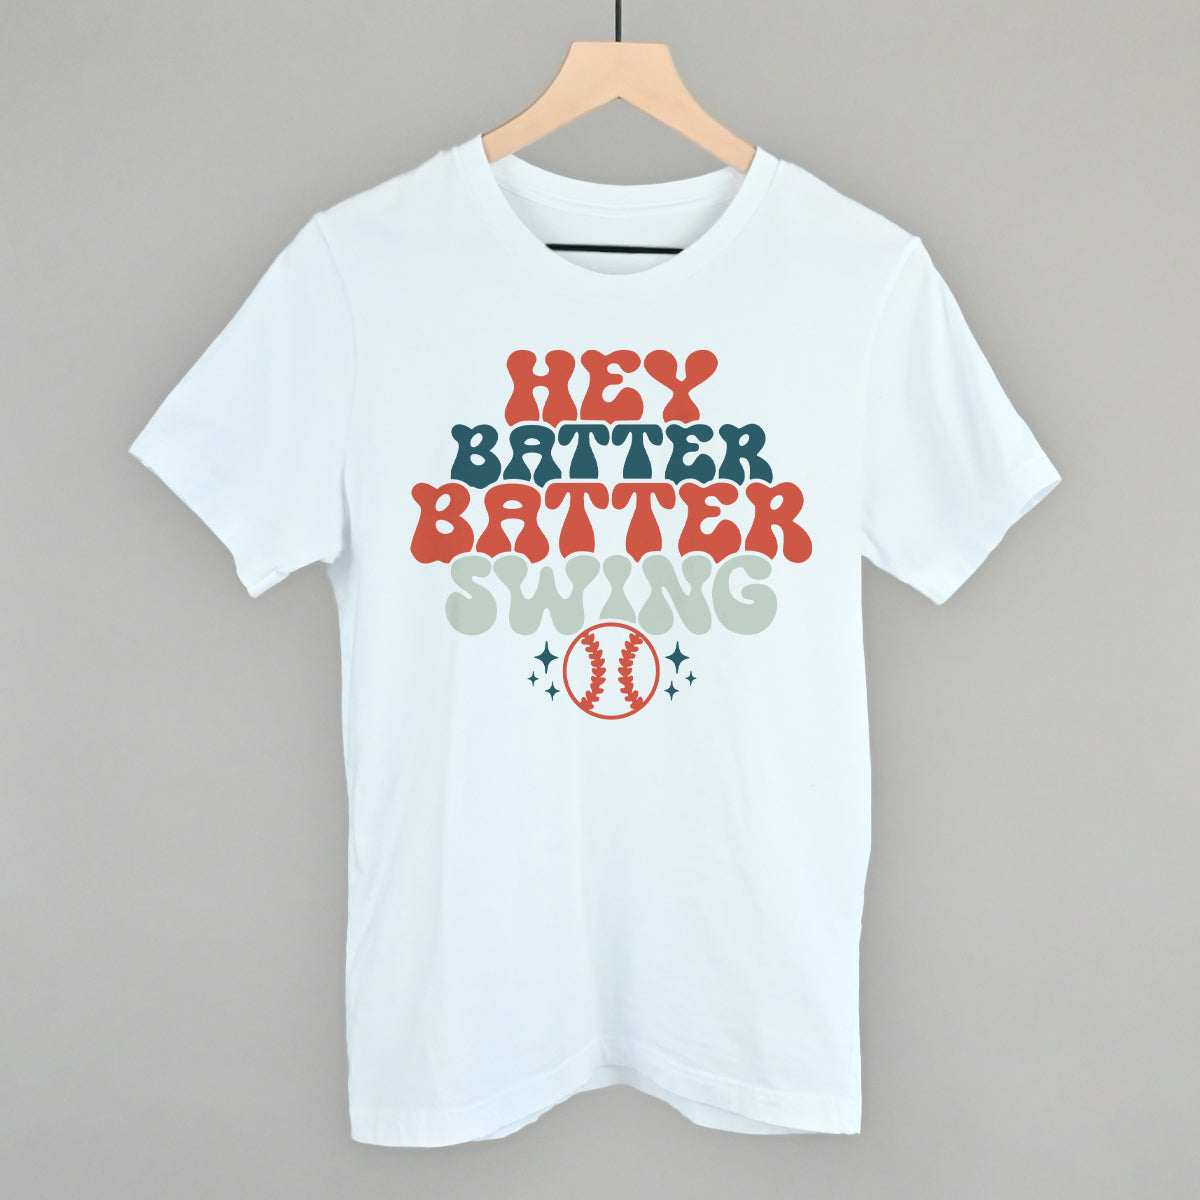 Hey Batter Batter Swing Vintage Baseball T-Shirt XXL / White